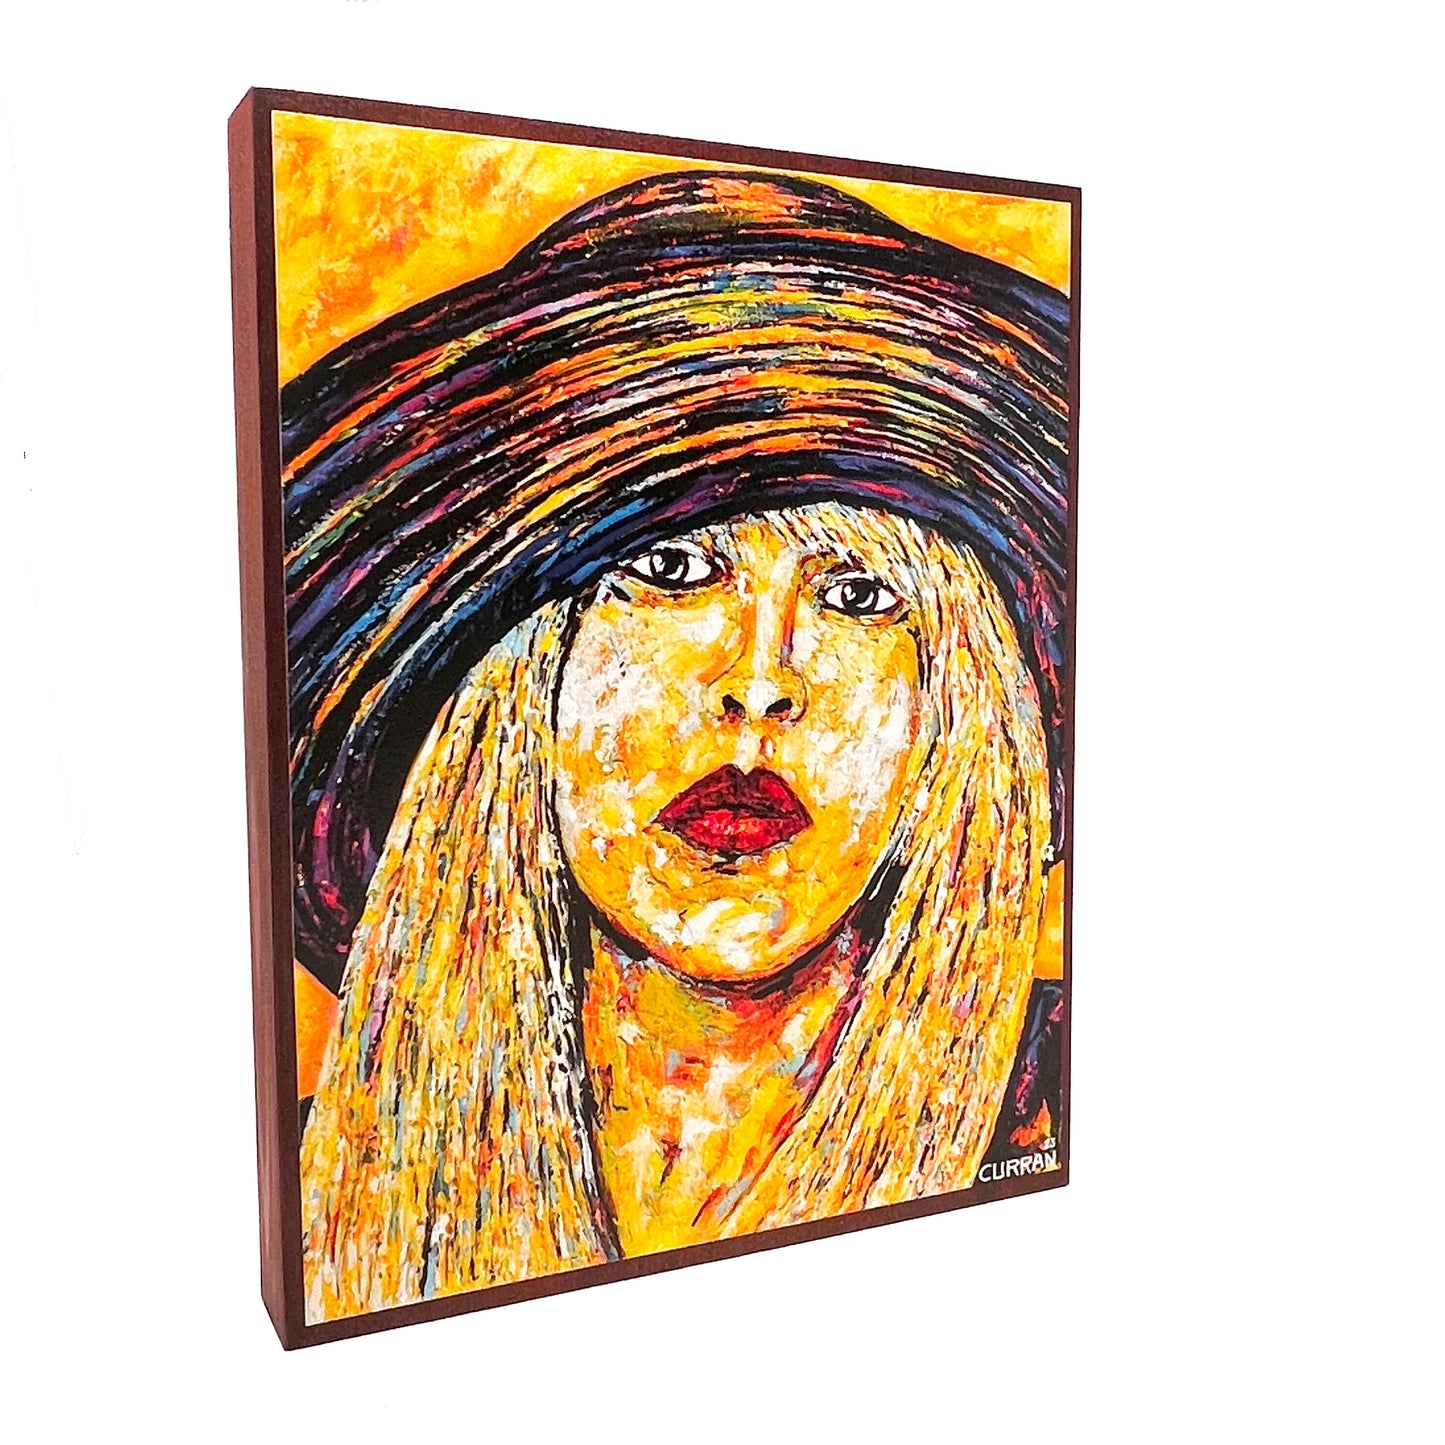 Stevie Nicks on Wood Panel (Limited Edition)